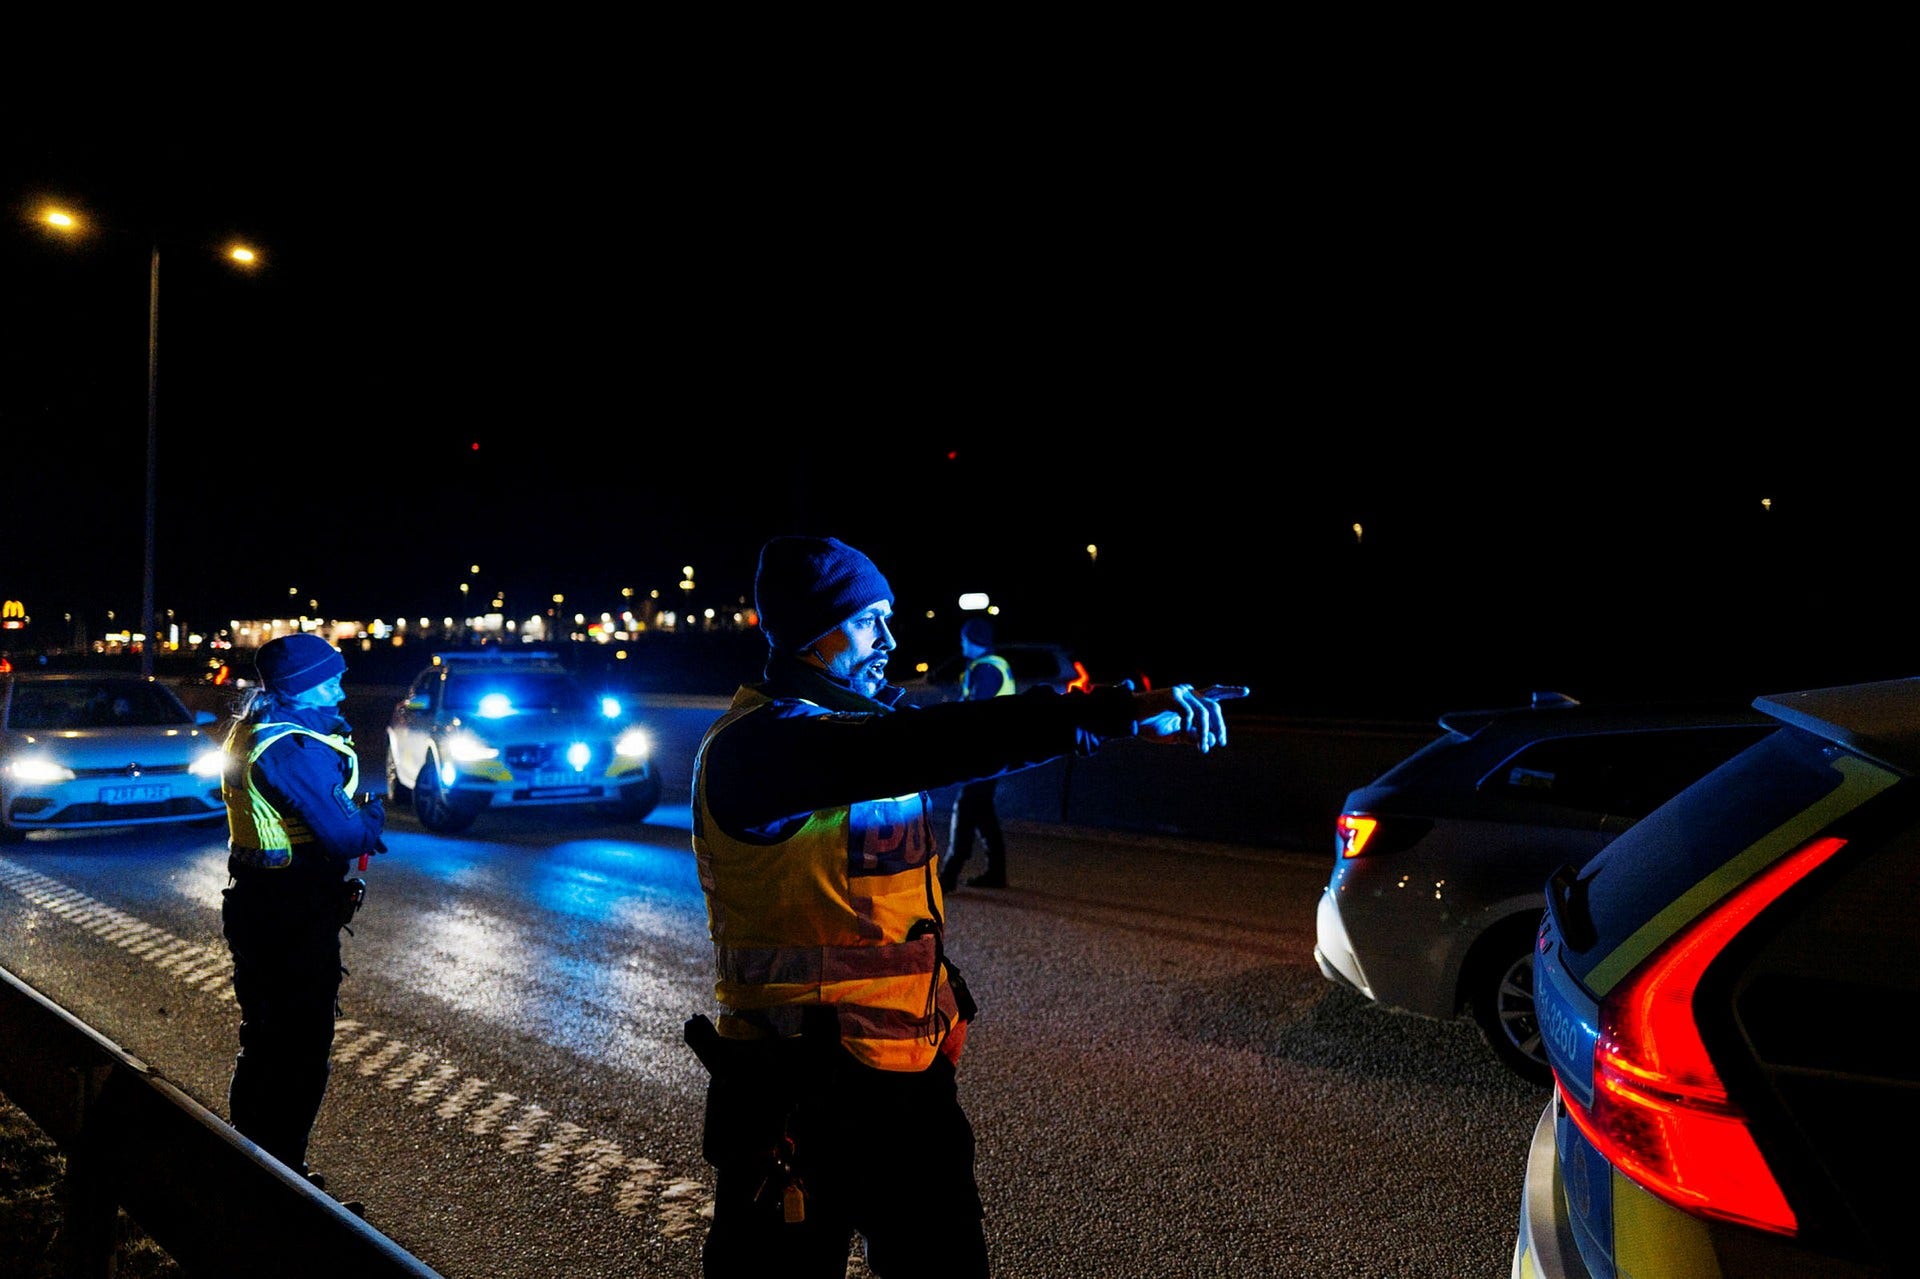 Det blir långa köer på E45 södergående riktning när IGV-poliserna utför en trafikkontroll på bilarna som ska in mot centrala Göteborg.